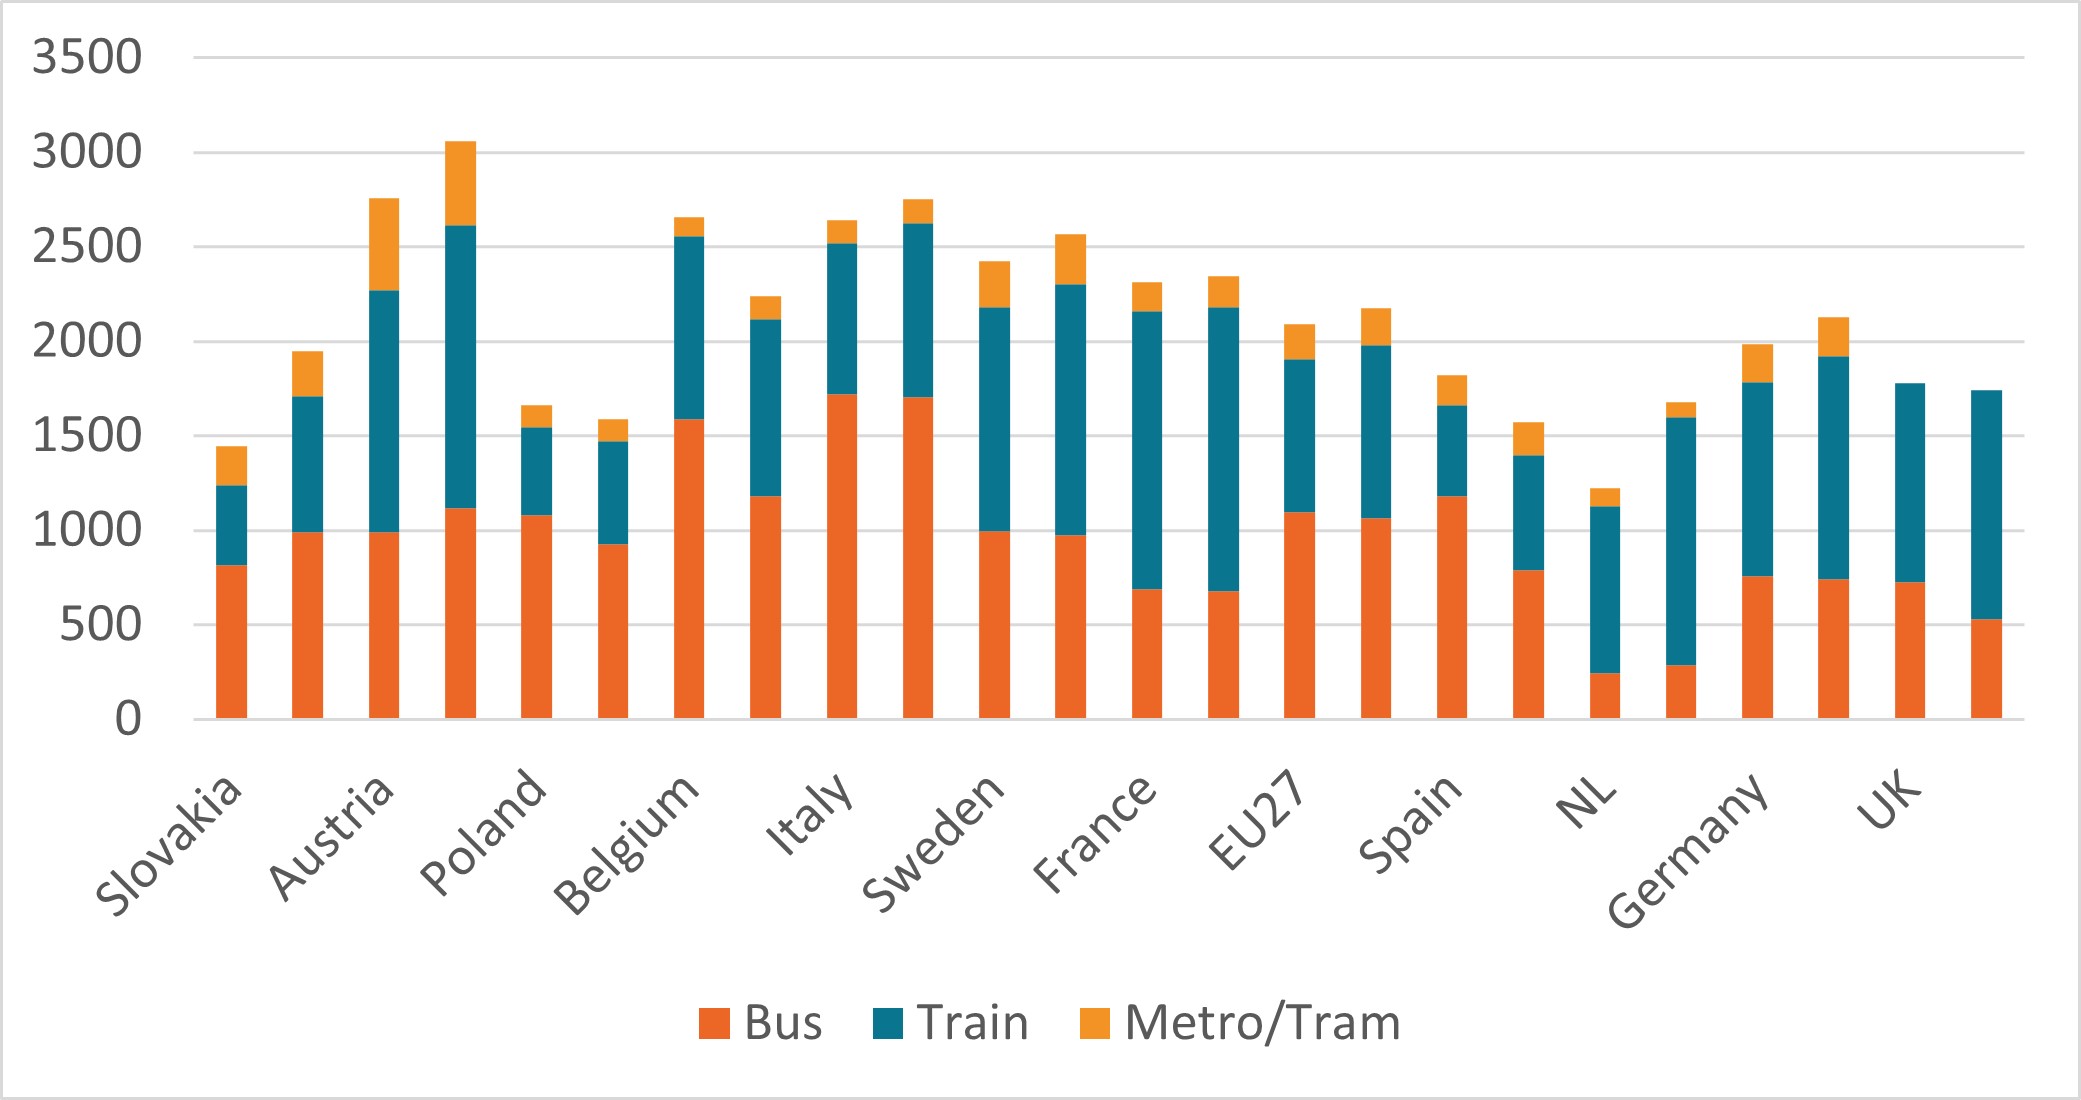 Mobility in public transport per capita